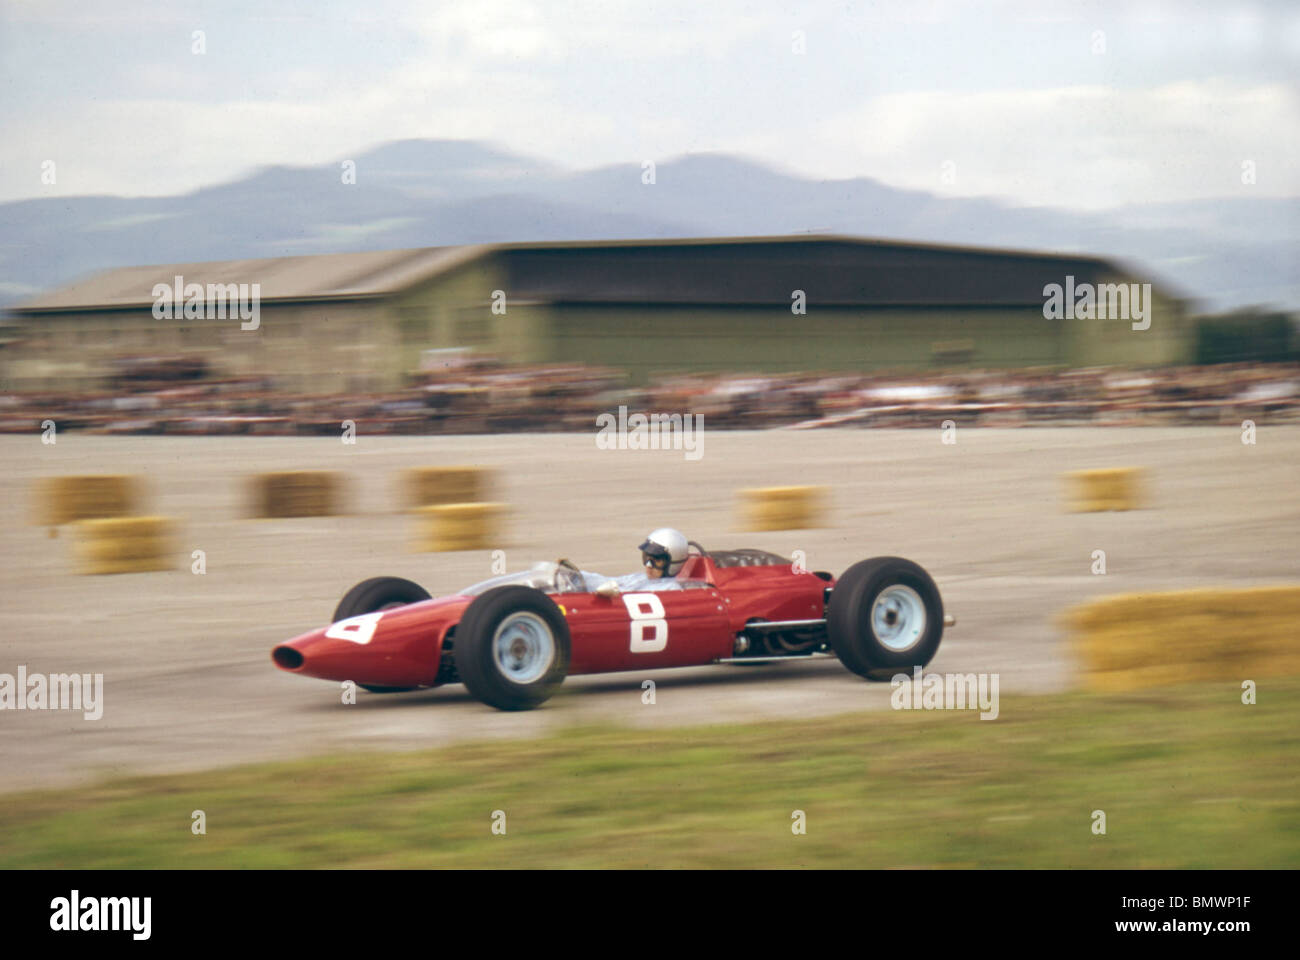 Lorenzo Bandini dans Ferrari 156 sur sa façon de gagner le Grand Prix d'Autriche 1964 à Zeltweg Banque D'Images